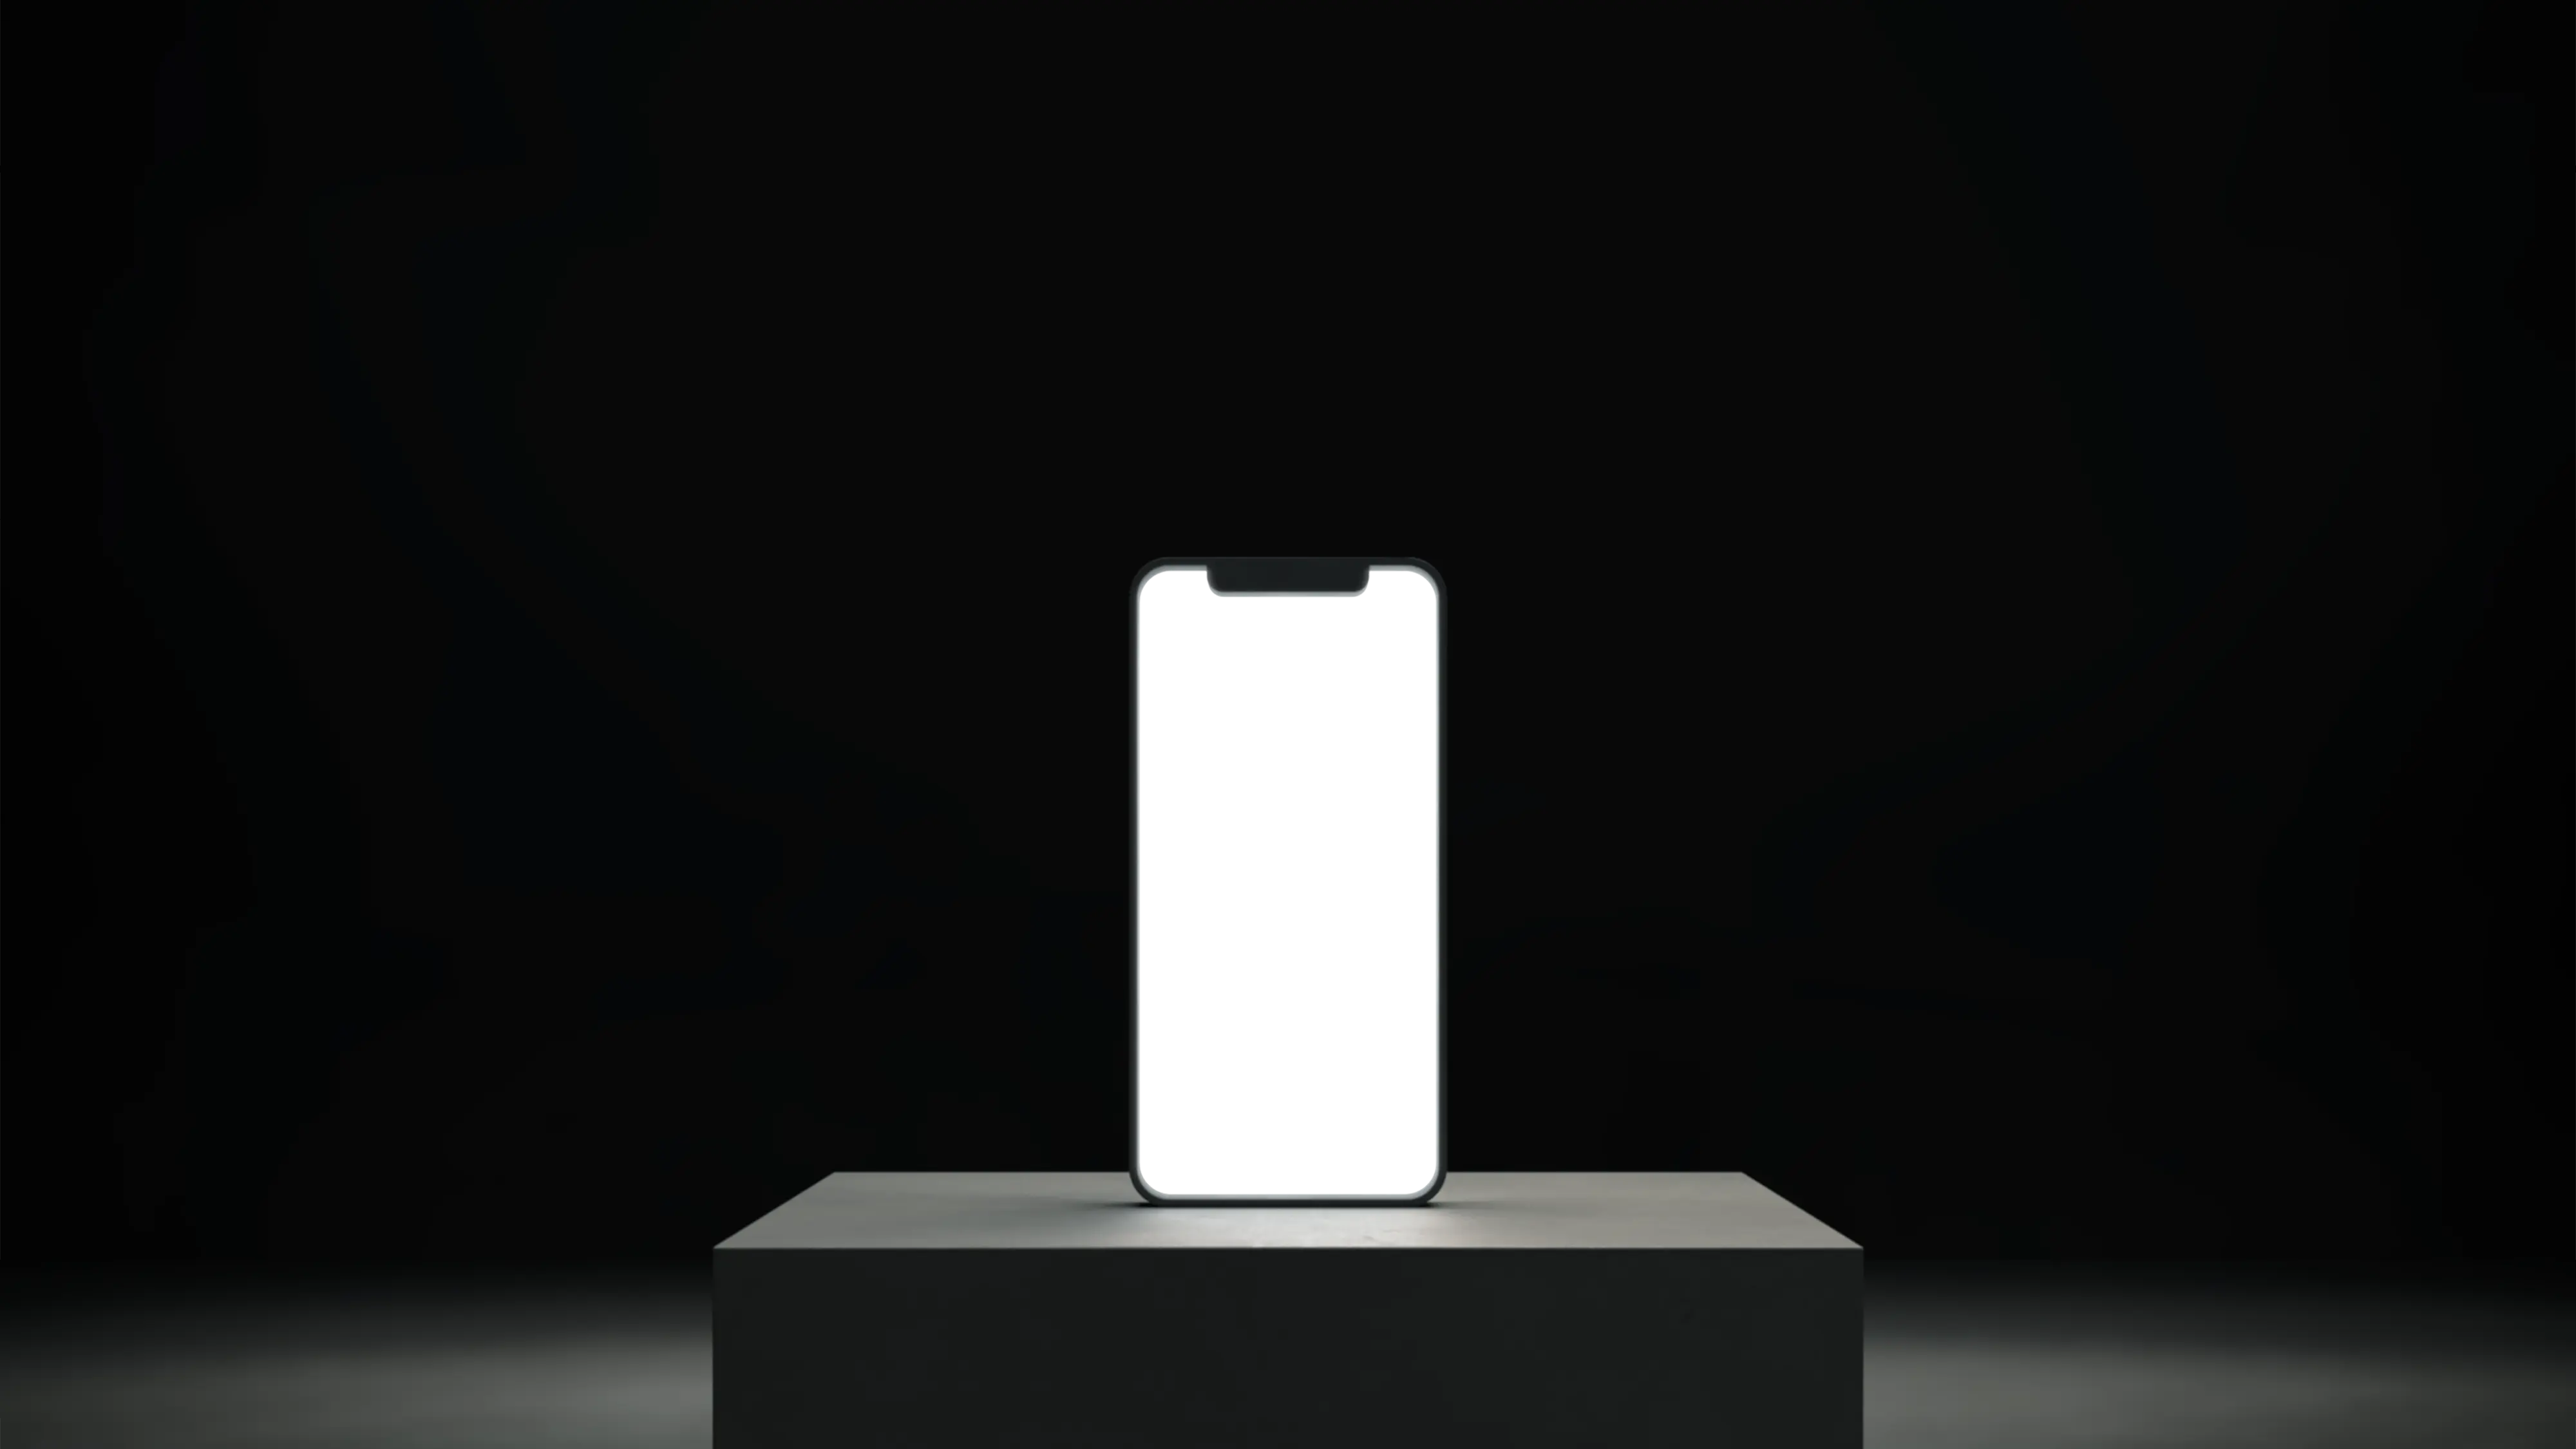 Teléfono sobre un soporte con una pantalla blanca vacía y encendida.